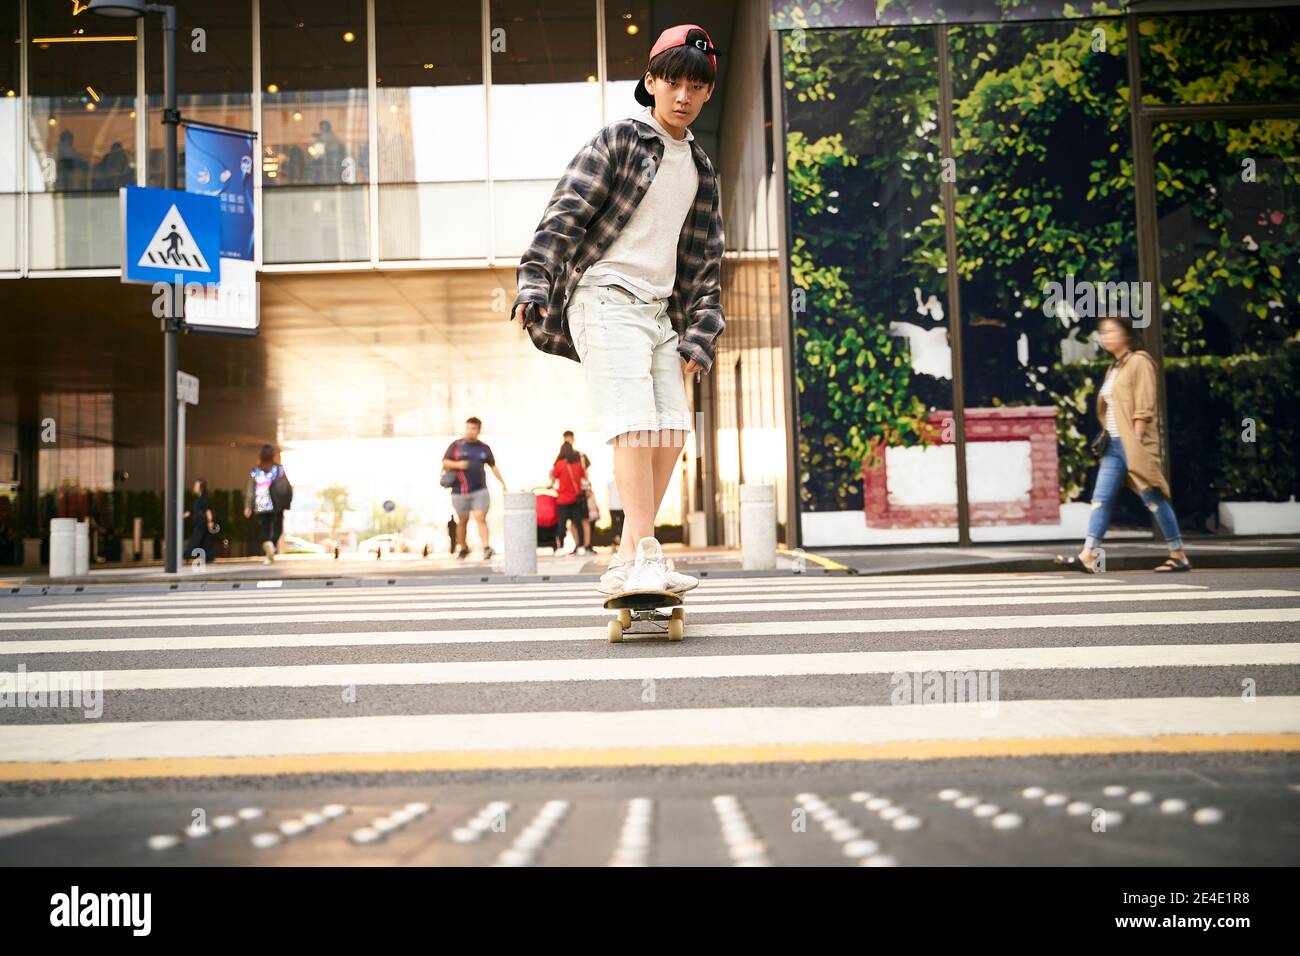 un adolescent asiatique de 15 ans fait du skateboard en plein air dans la rue Banque D'Images